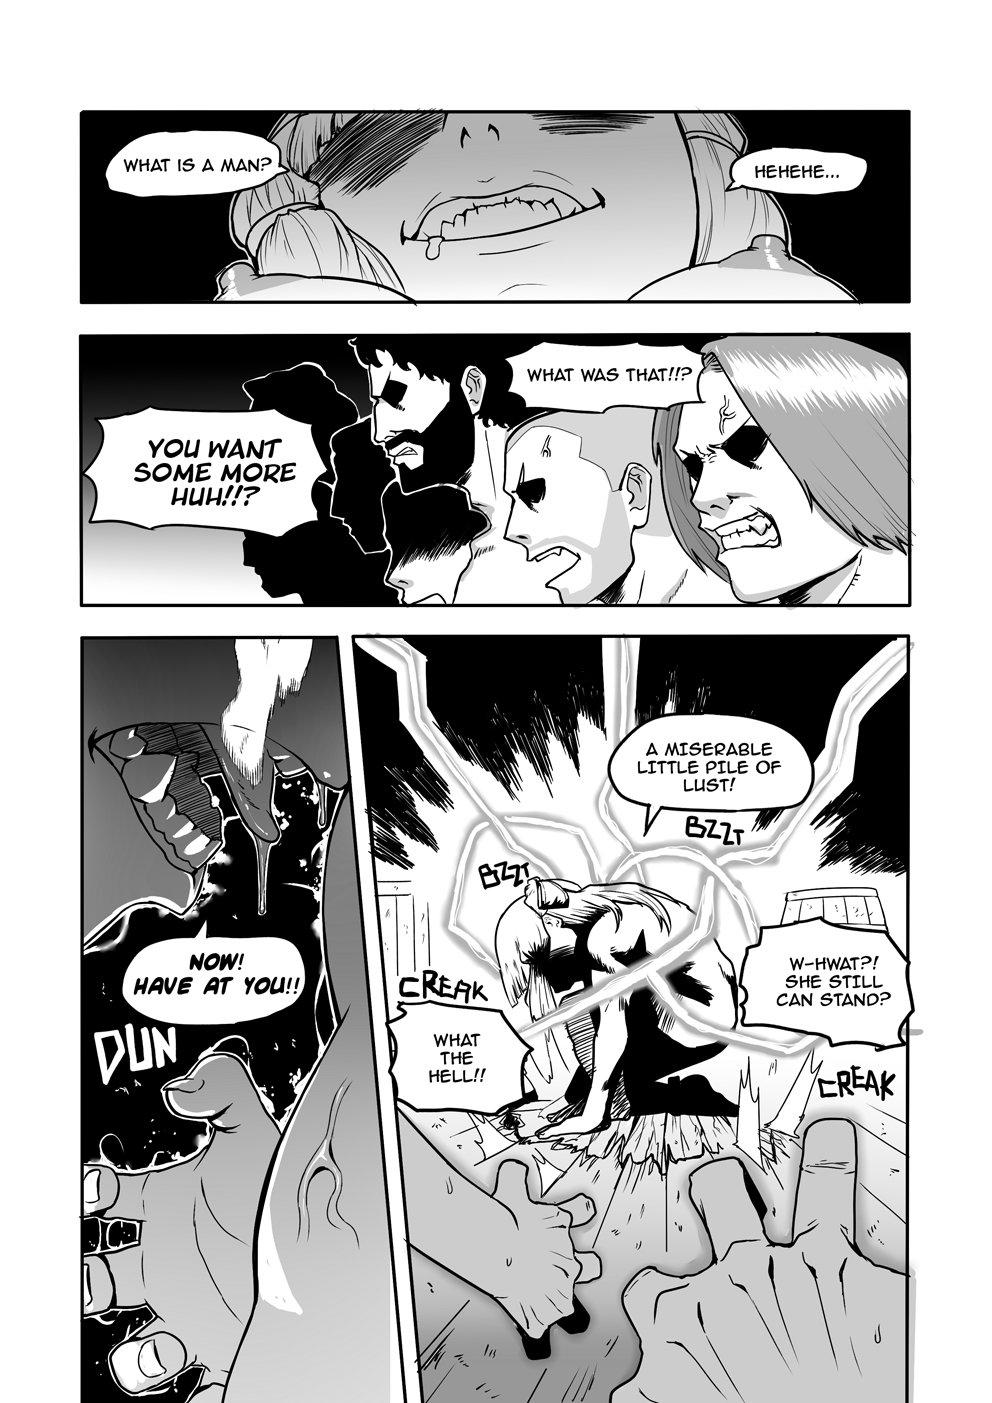 Trans Death by Snu-Snu - Fate grand order Zorra - Page 5